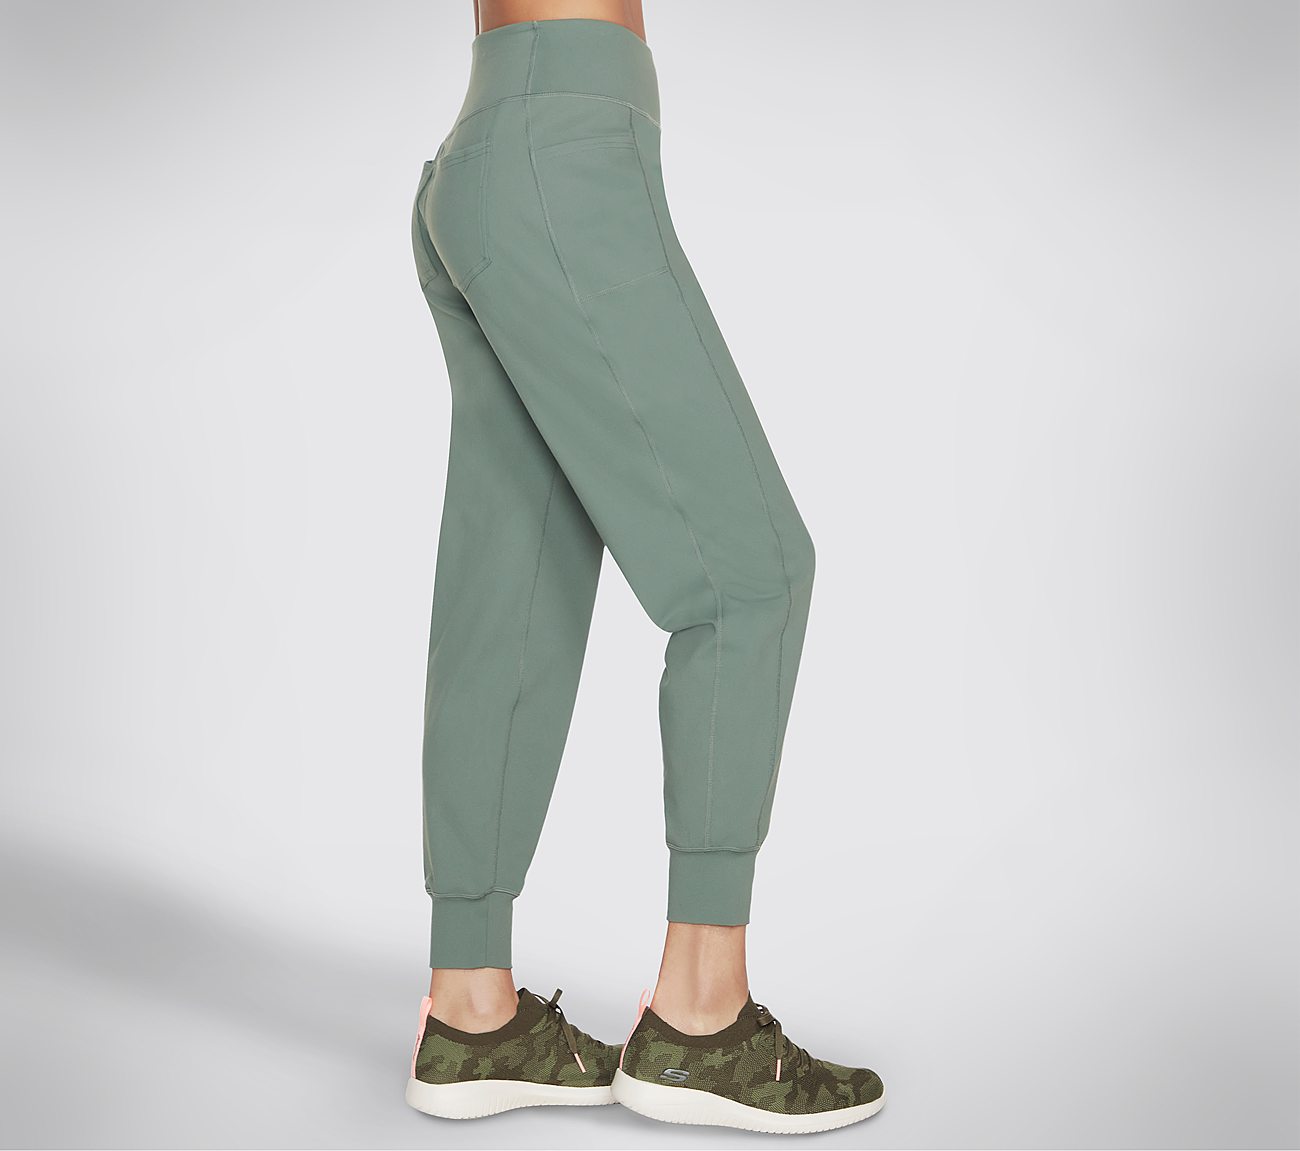 Skechers The Go Walk Evolution Jogger, Light Green Gym Pants For Women